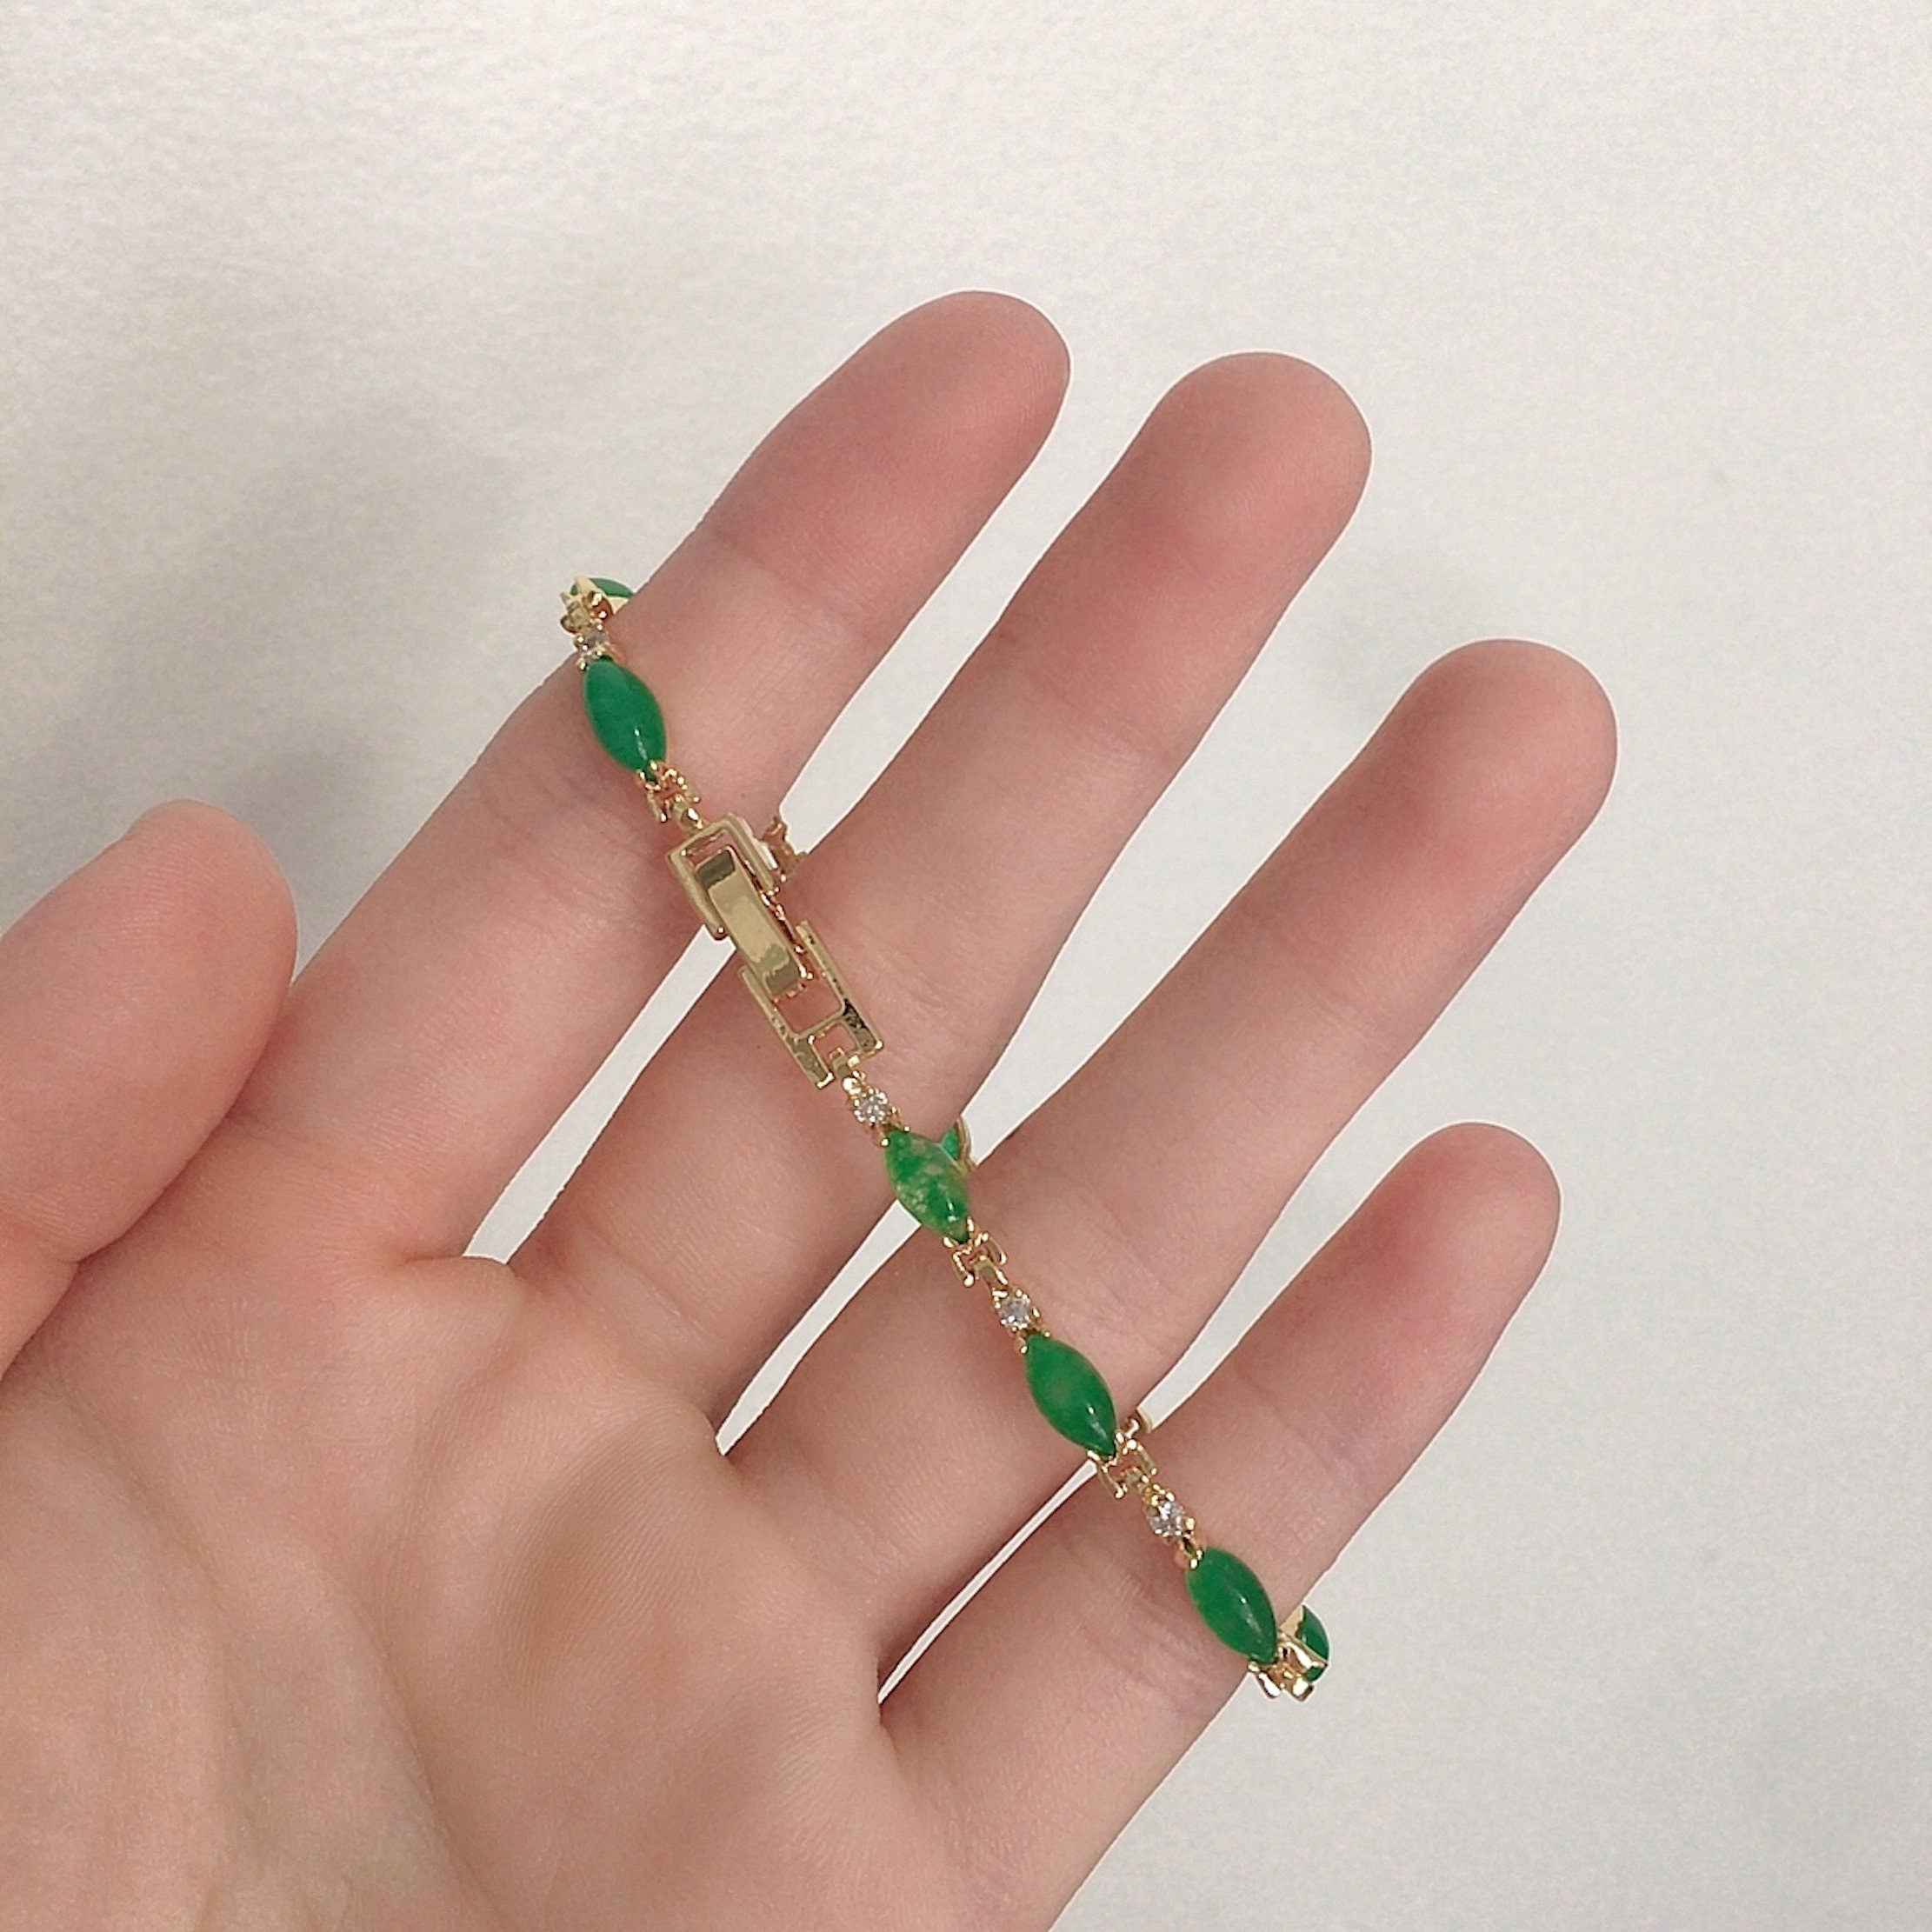 4 Leaf Clover Bracelet - Gold - Double Sided - Green